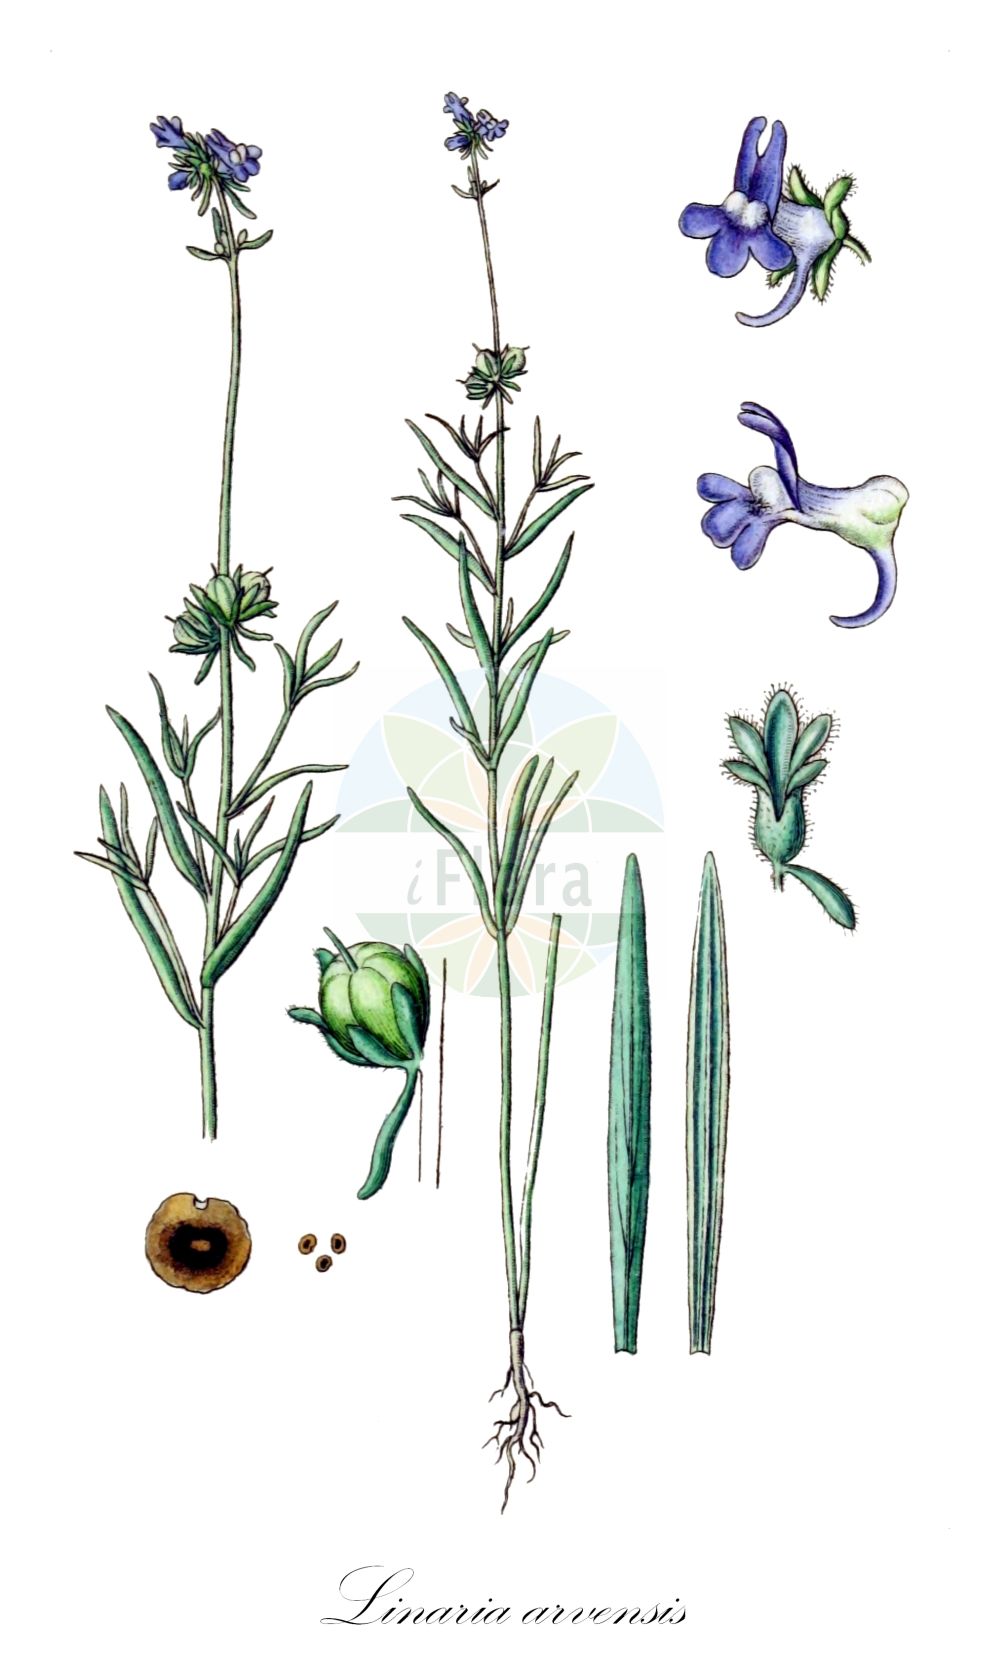 Historische Abbildung von Linaria arvensis (Acker-Leinkraut - Corn Toadflax). Das Bild zeigt Blatt, Bluete, Frucht und Same. ---- Historical Drawing of Linaria arvensis (Acker-Leinkraut - Corn Toadflax). The image is showing leaf, flower, fruit and seed.(Linaria arvensis,Acker-Leinkraut,Corn Toadflax,Antirrhinum arvense,Linaria arvensis,Linaria arvensis (L.) Desf.,Linaria arvensis subsp. eu-arvensis,Acker-Leinkraut,Corn Toadflax,Field Toadflax,Linaria,Leinkraut,Toadflax,Plantaginaceae,Wegerichgewächse,Plantain family,Blatt,Bluete,Frucht,Same,leaf,flower,fruit,seed,Sturm (1796f))